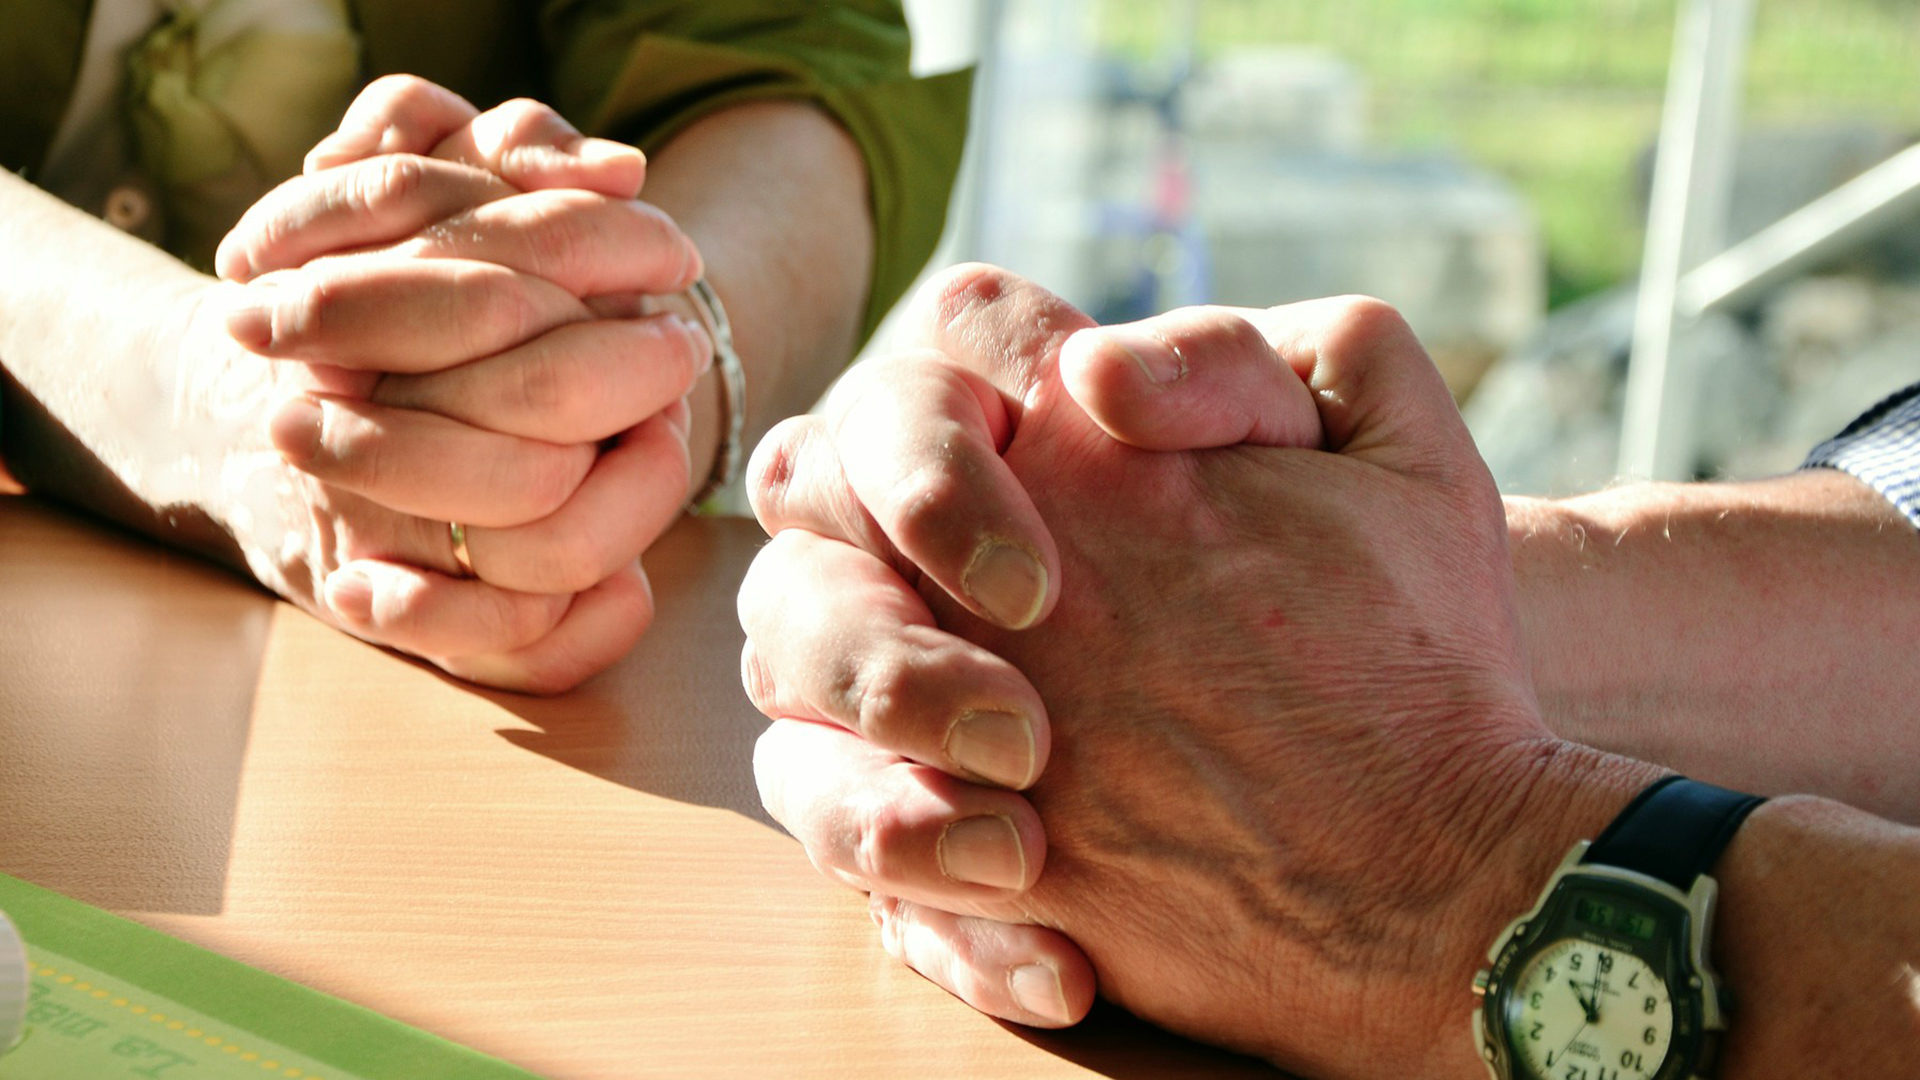 "Les bénédictions nous sont données afin que nous les partagions avec les autres", selon le pape |© Pixabay 